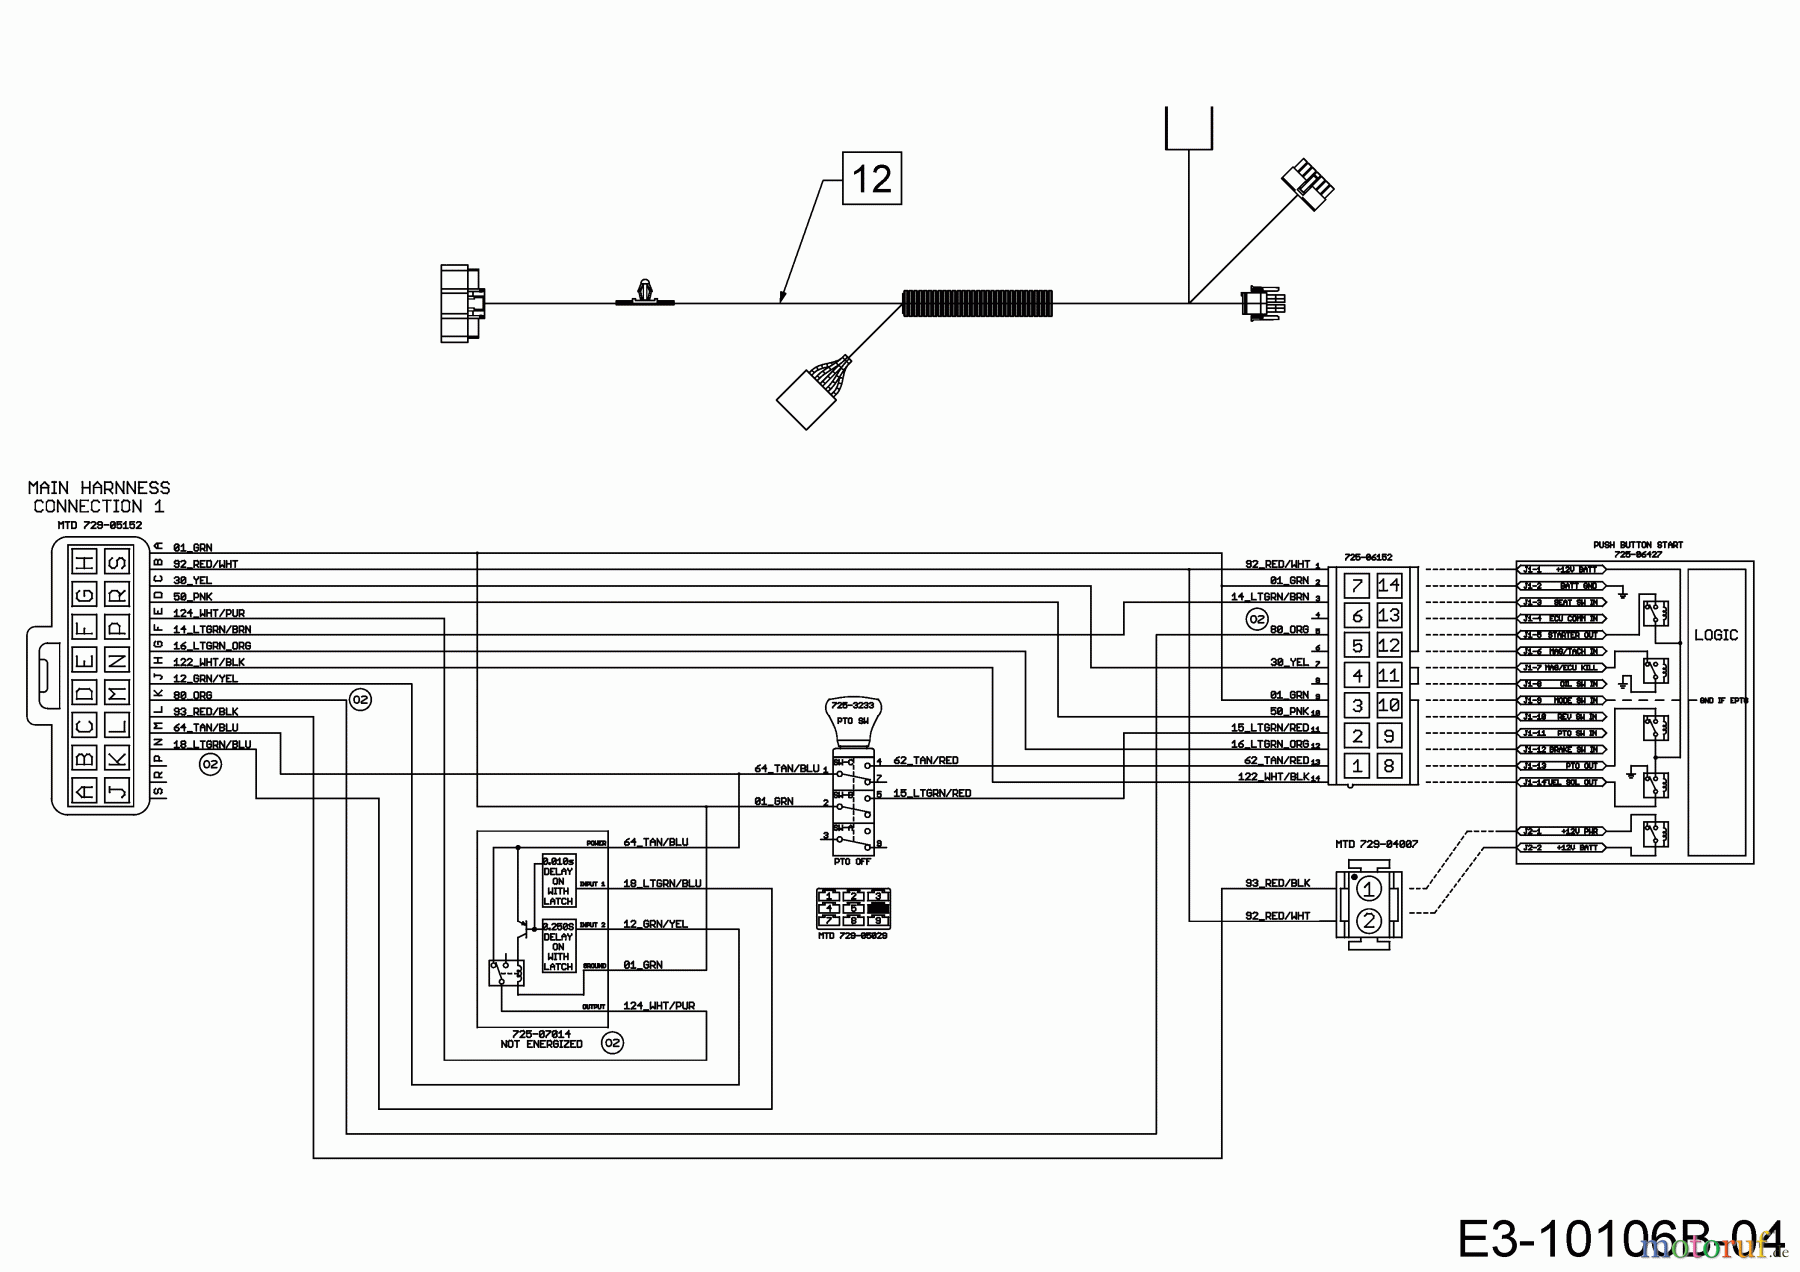  Gartenland Lawn tractors GL 17.5/106 H 13A8A1KR640  (2019) Wiring diagram dashboard